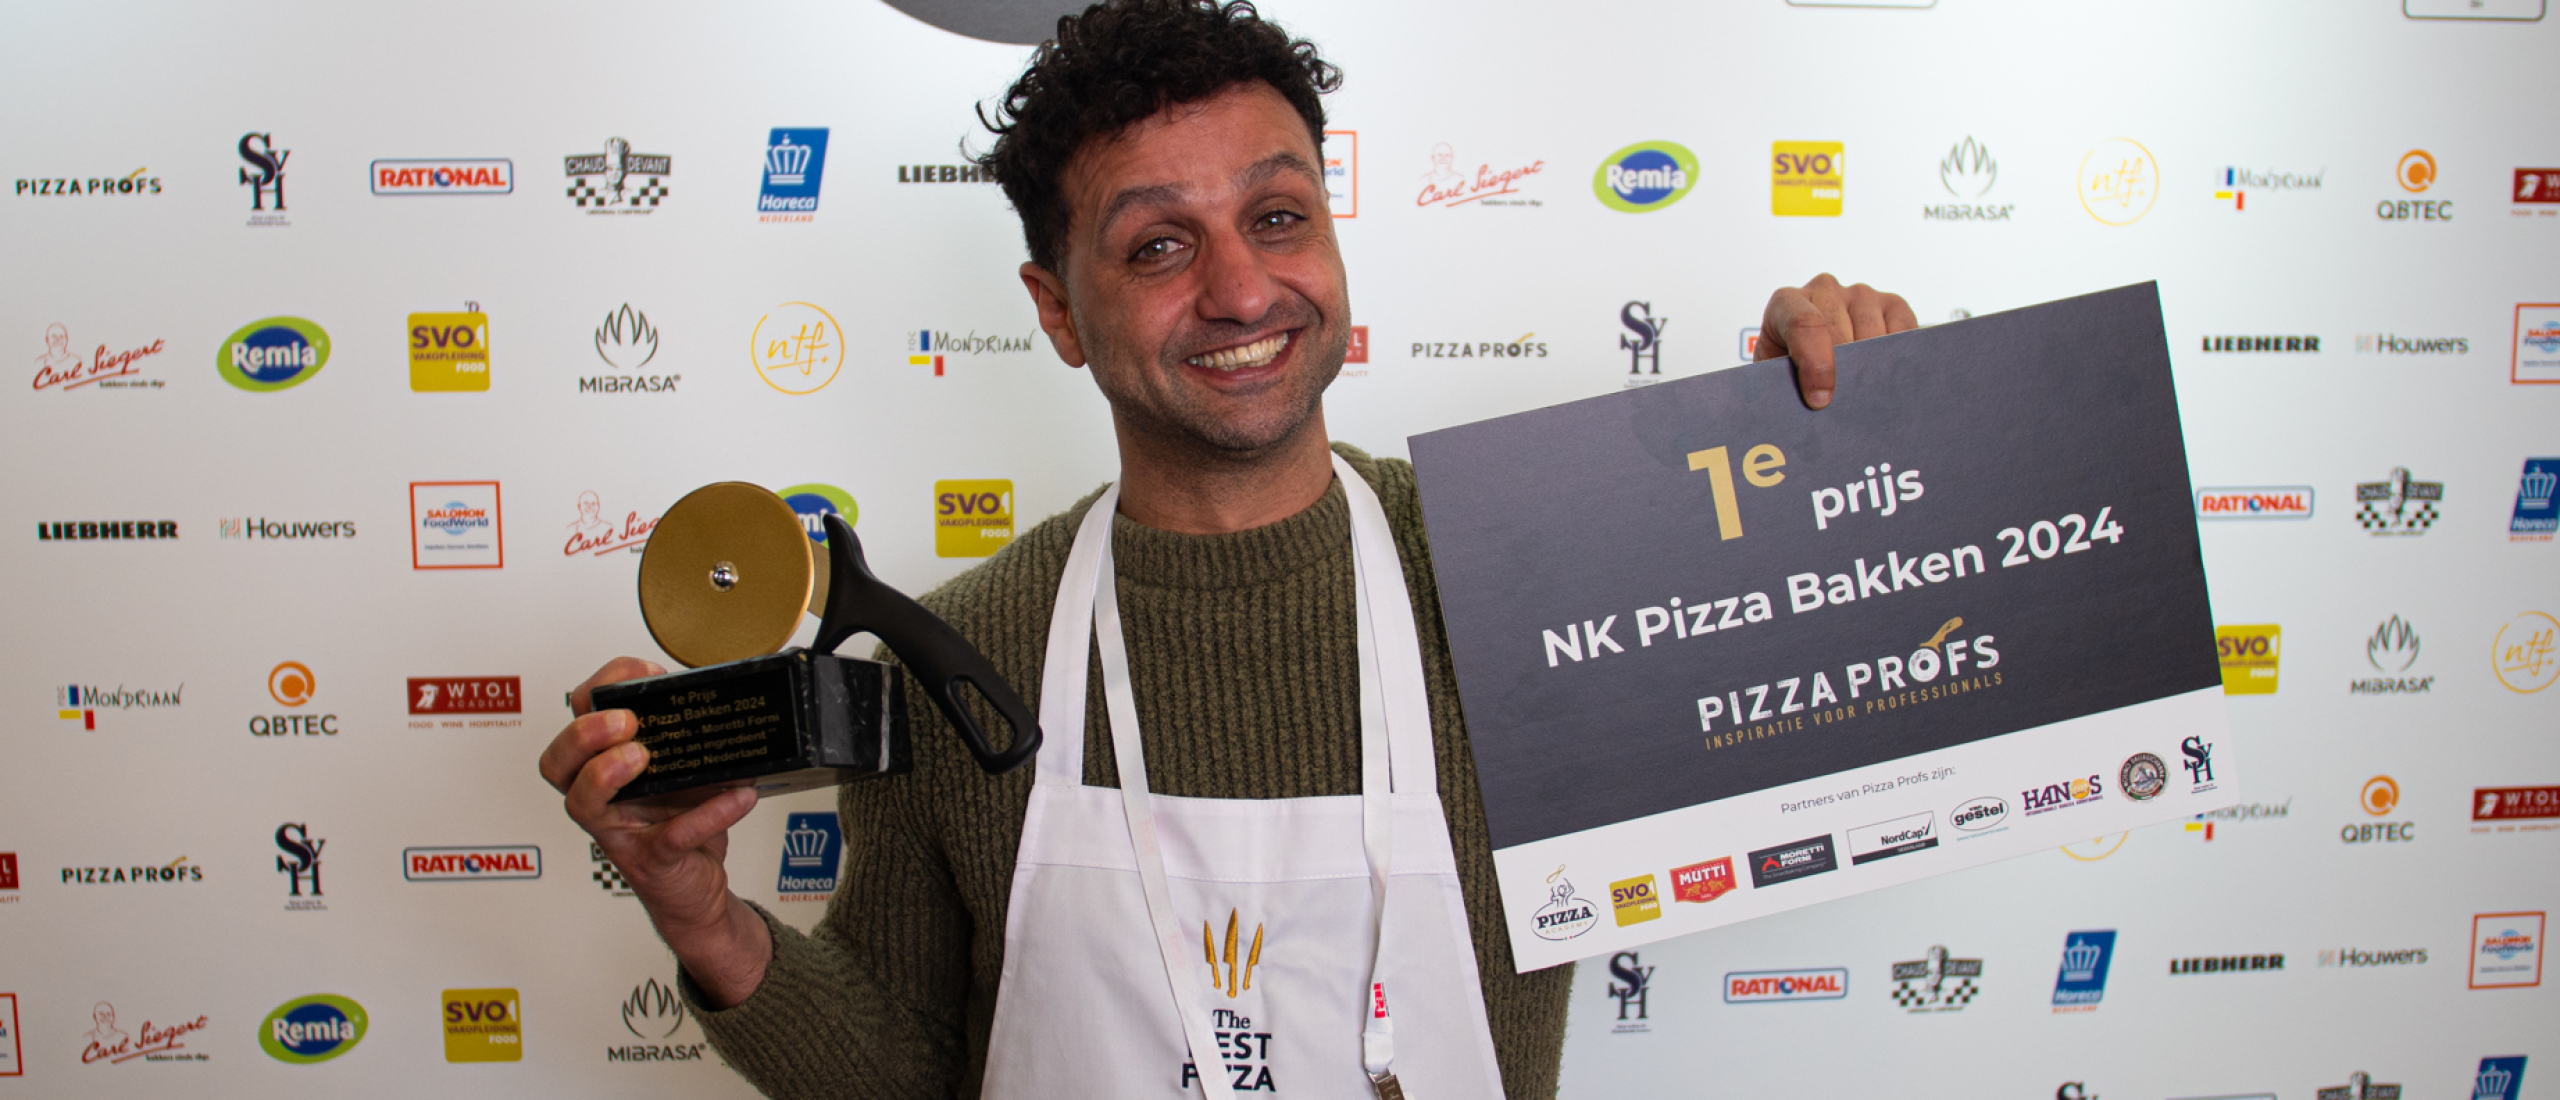 Tawfik el Shanwany wint NK Pizza bakken 2024